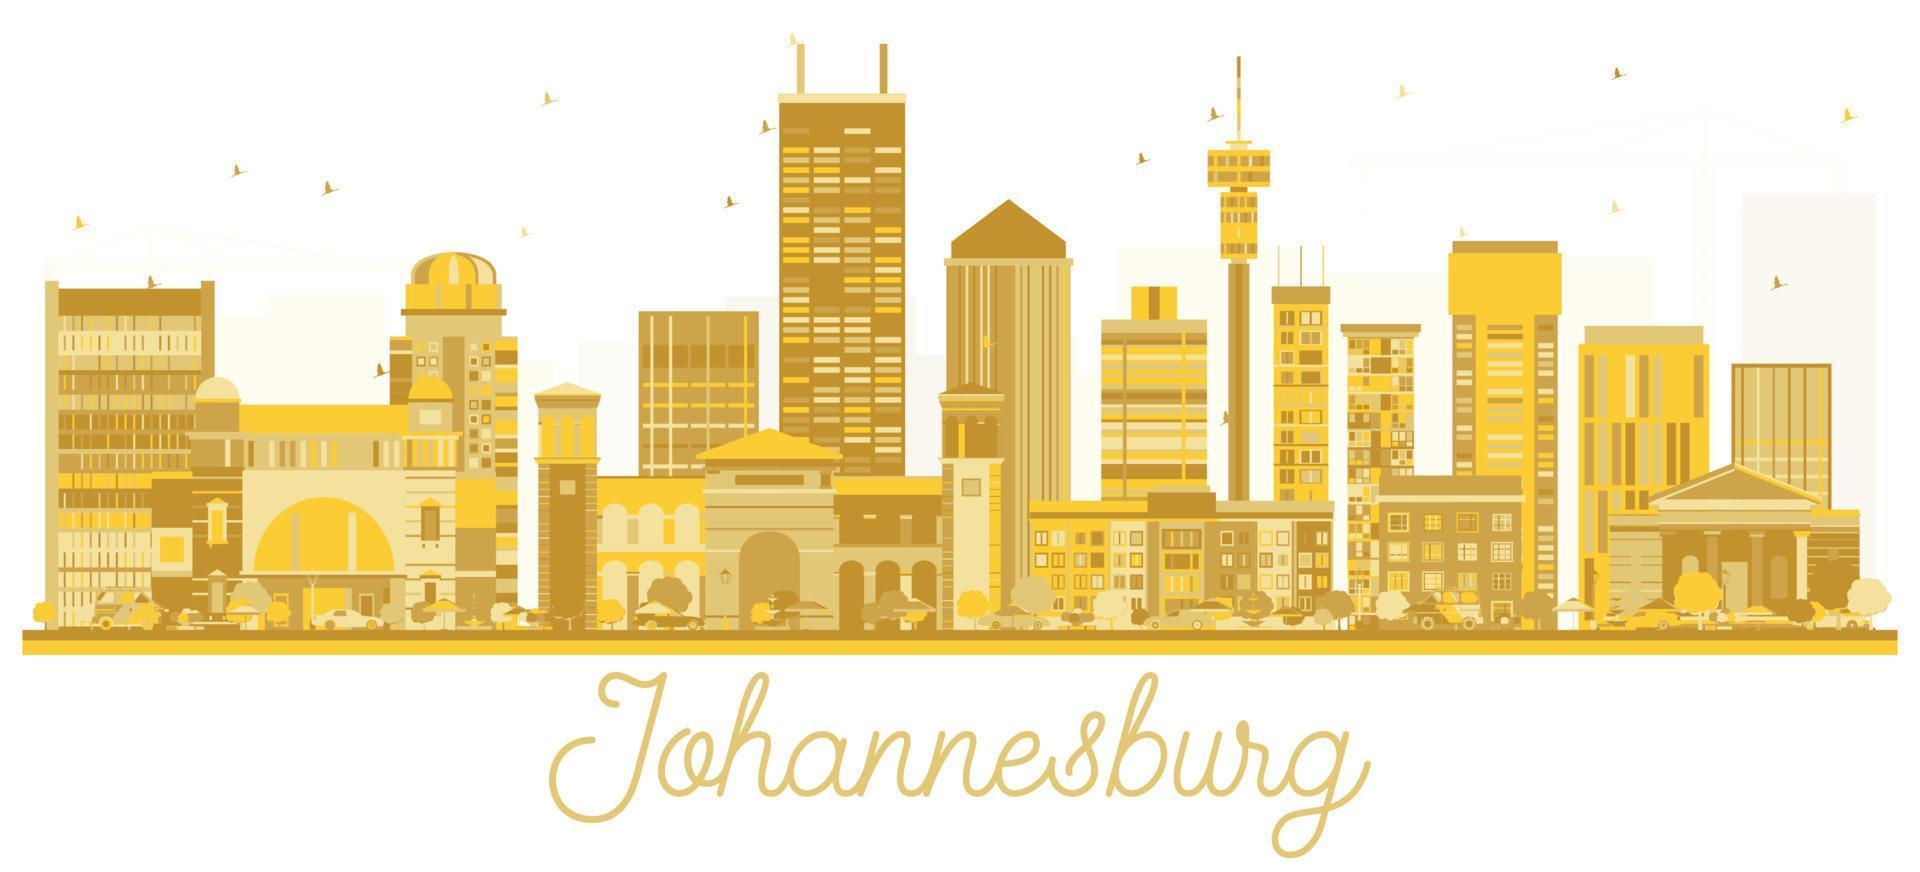 silueta dorada del horizonte de la ciudad de johannesburgo, sudáfrica. vector